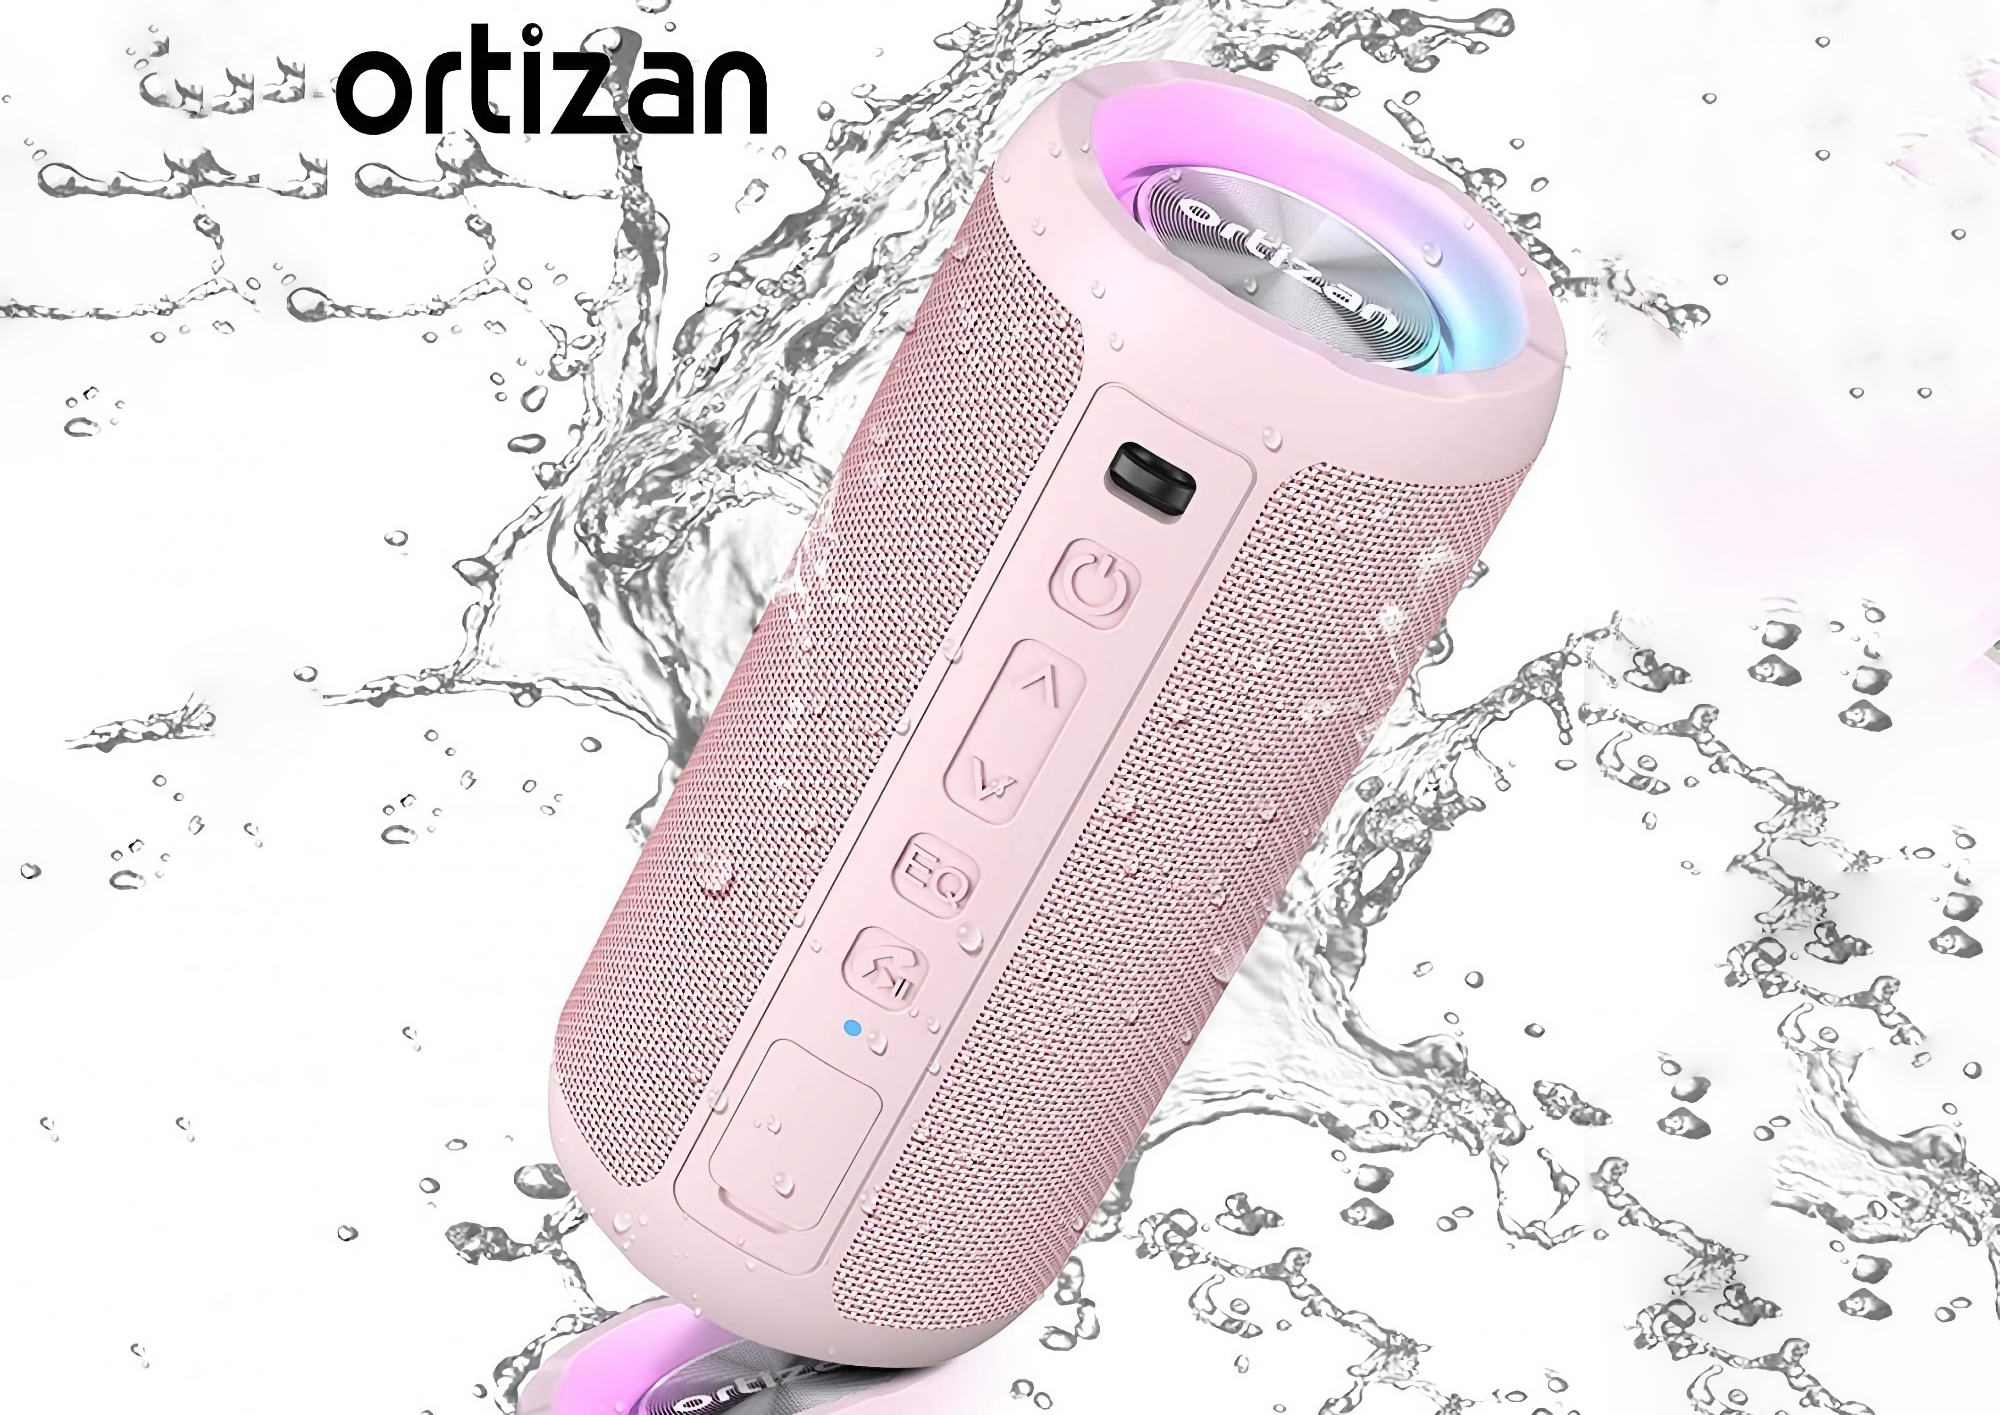 Ortizan X10 en Amazon: Altavoz inalámbrico con iluminación RGB, protección IPX7 y hasta 30 horas de duración de la batería por 19 dólares de descuento